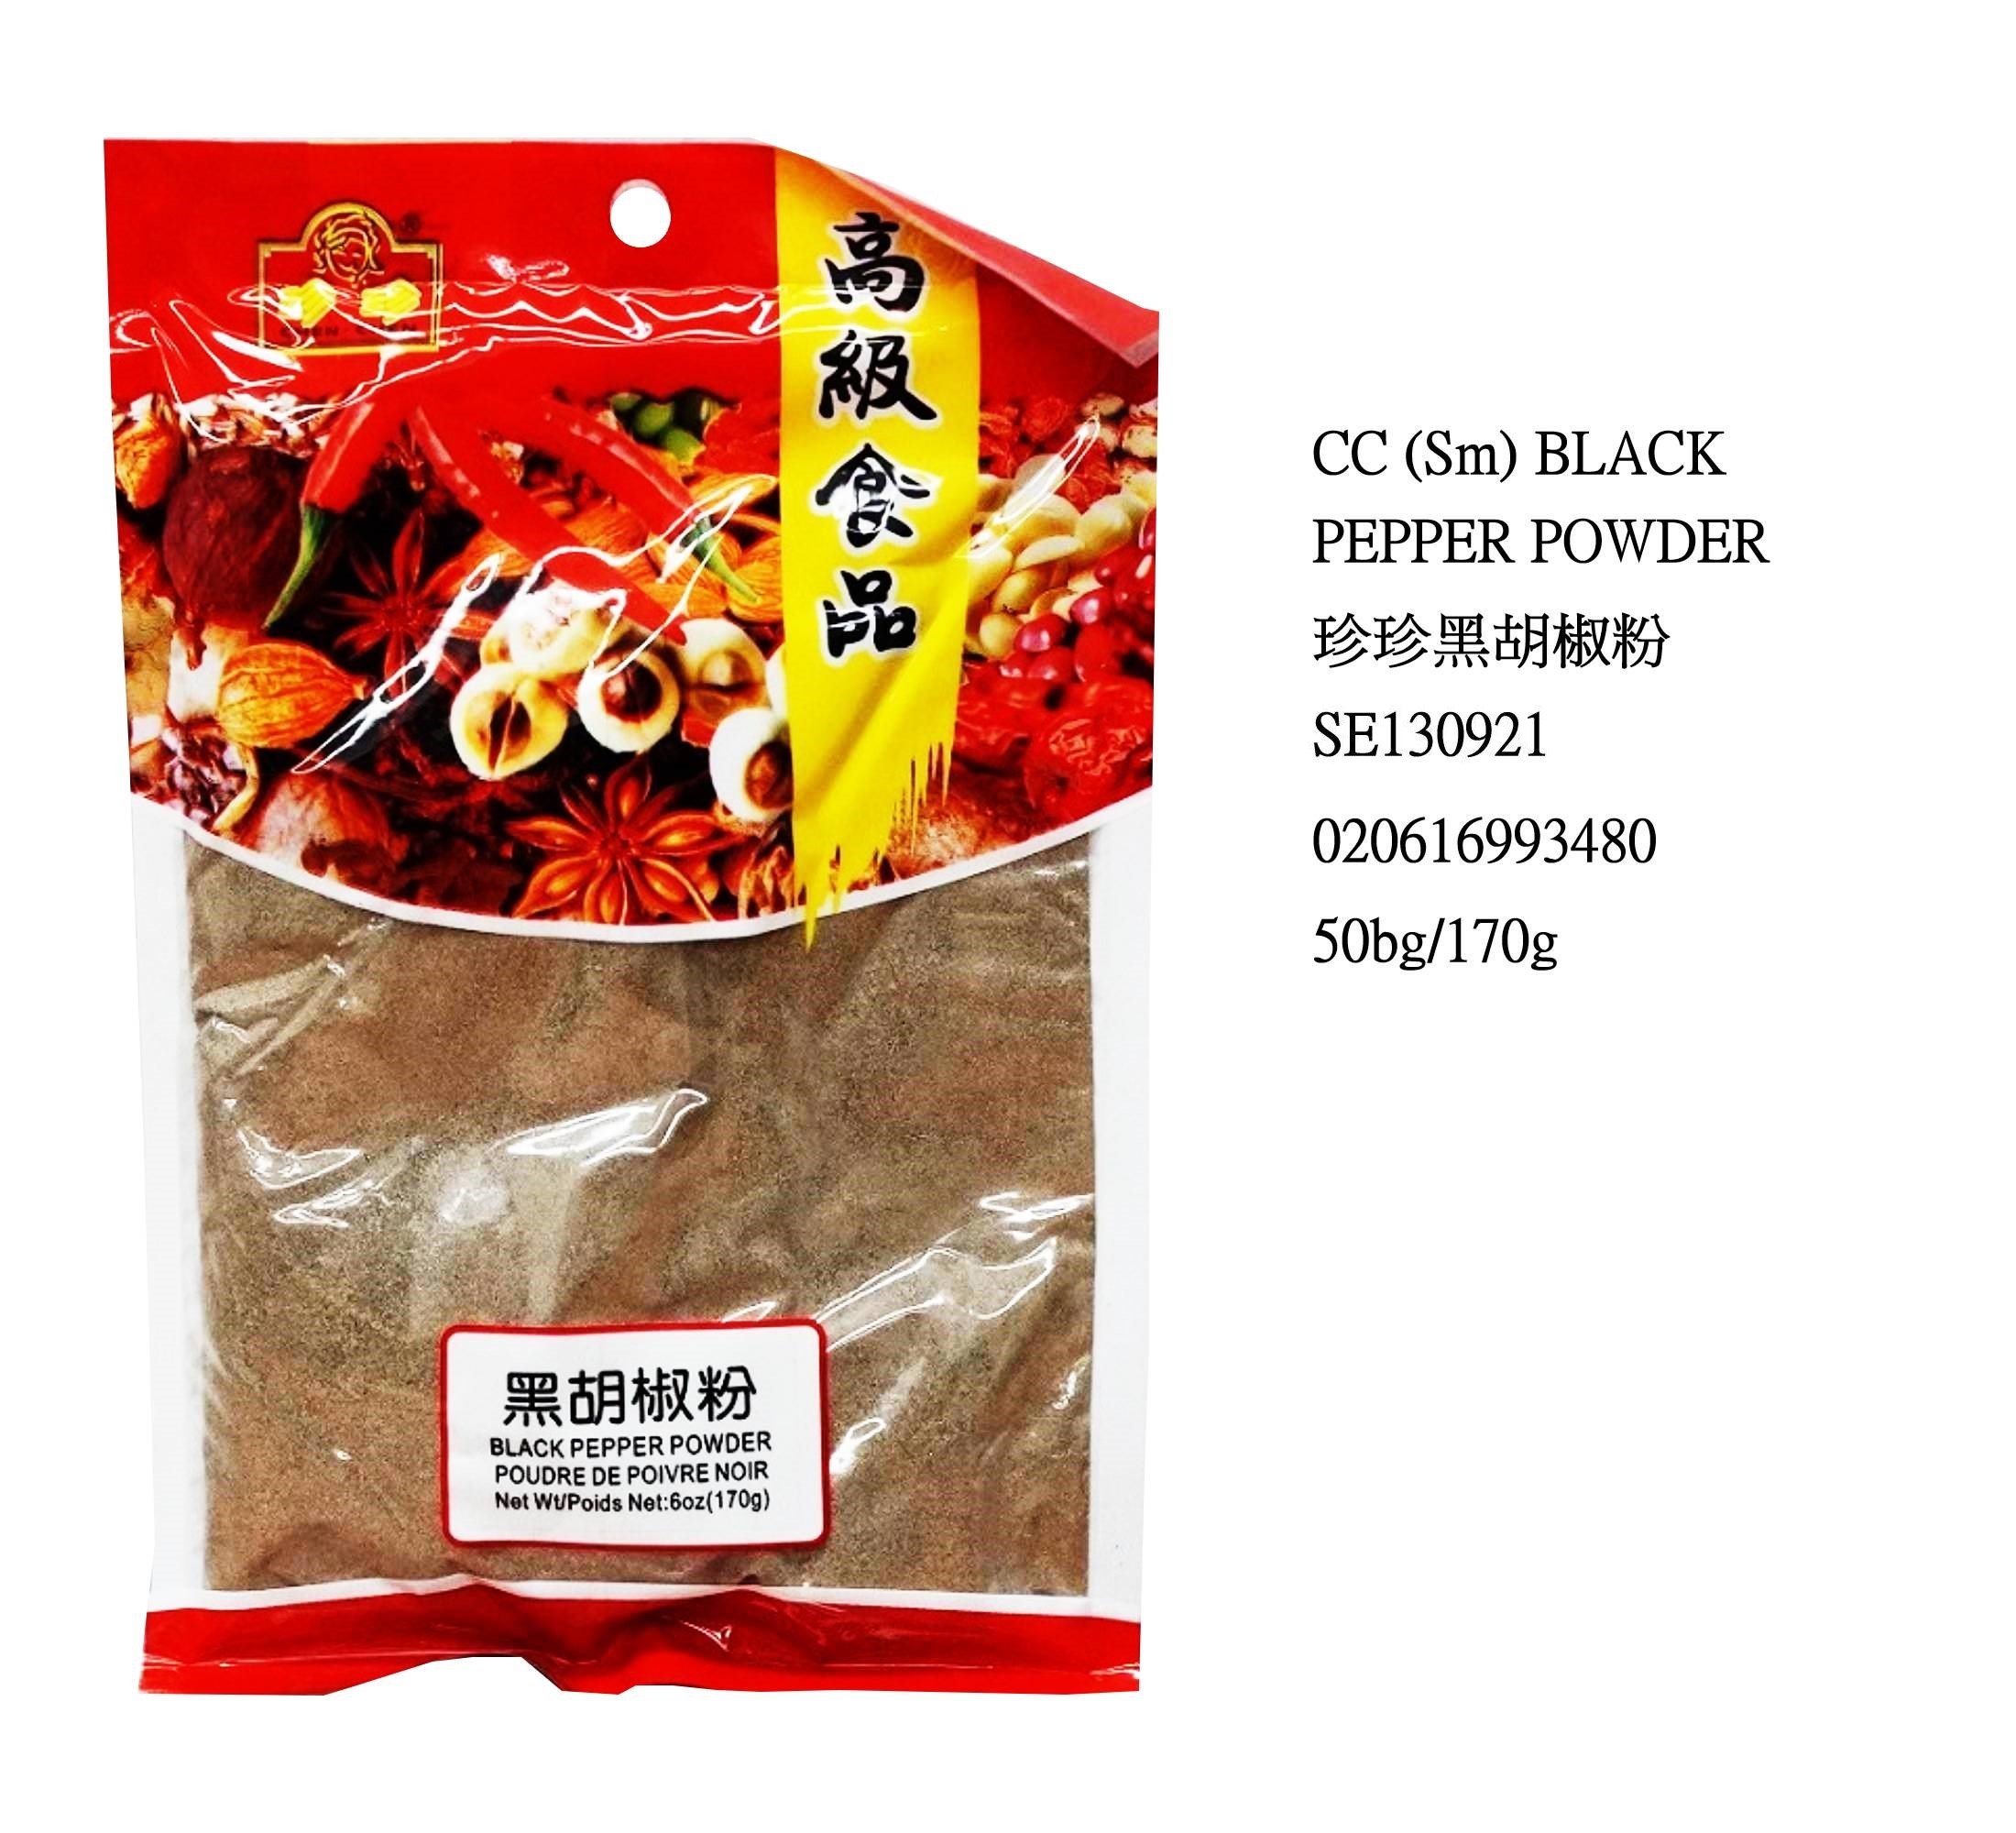 CHEN CHEN (SM) BLACK PEPPER POWDER SE130921